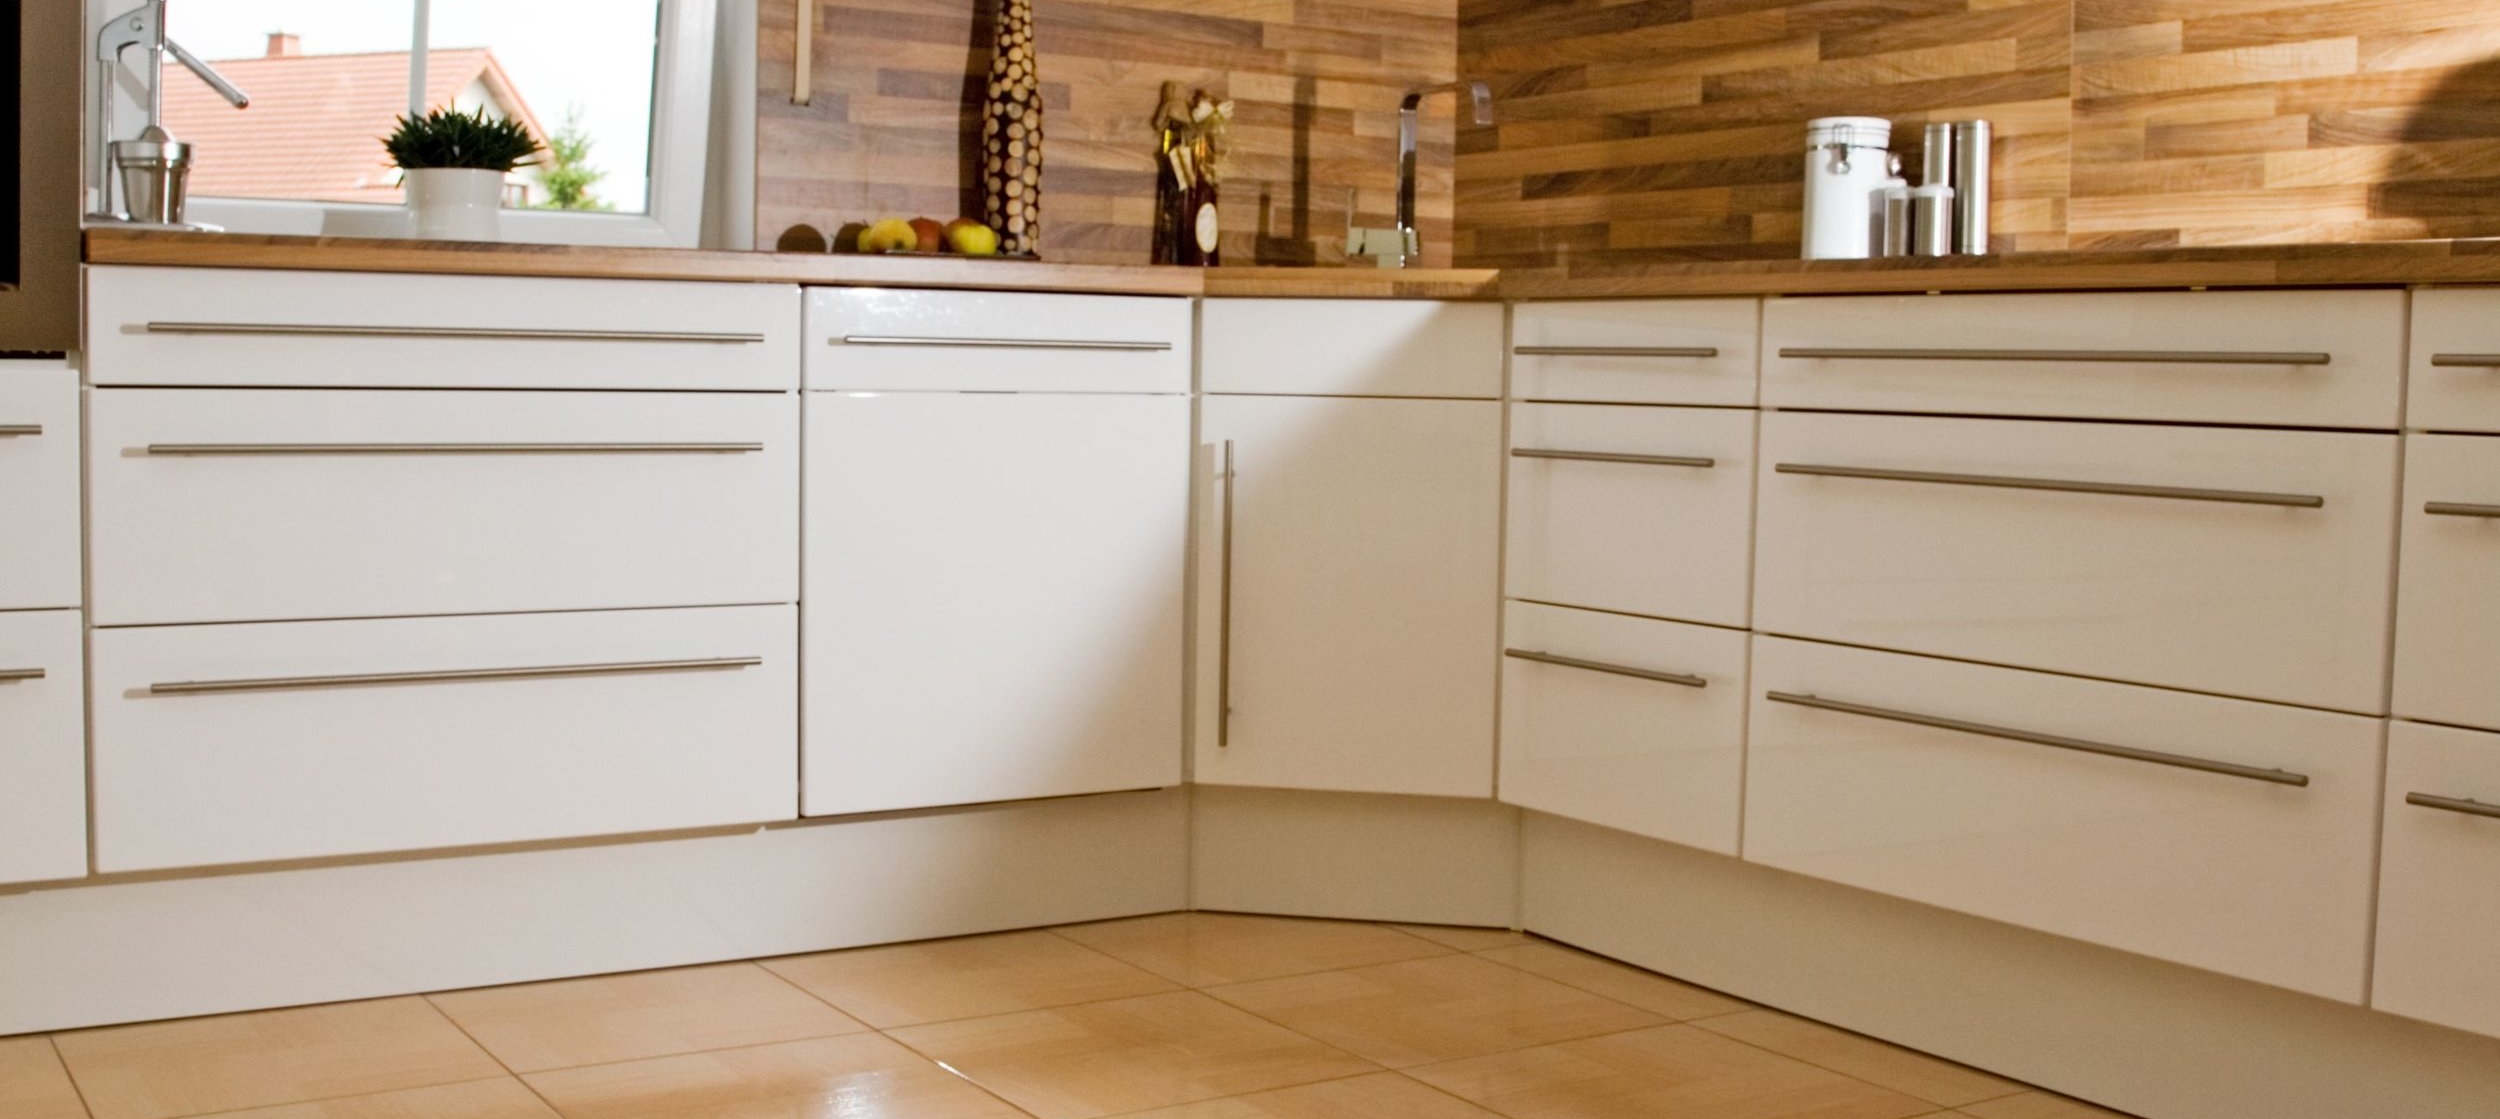 Kitchen Cupboards 2-2.jpg